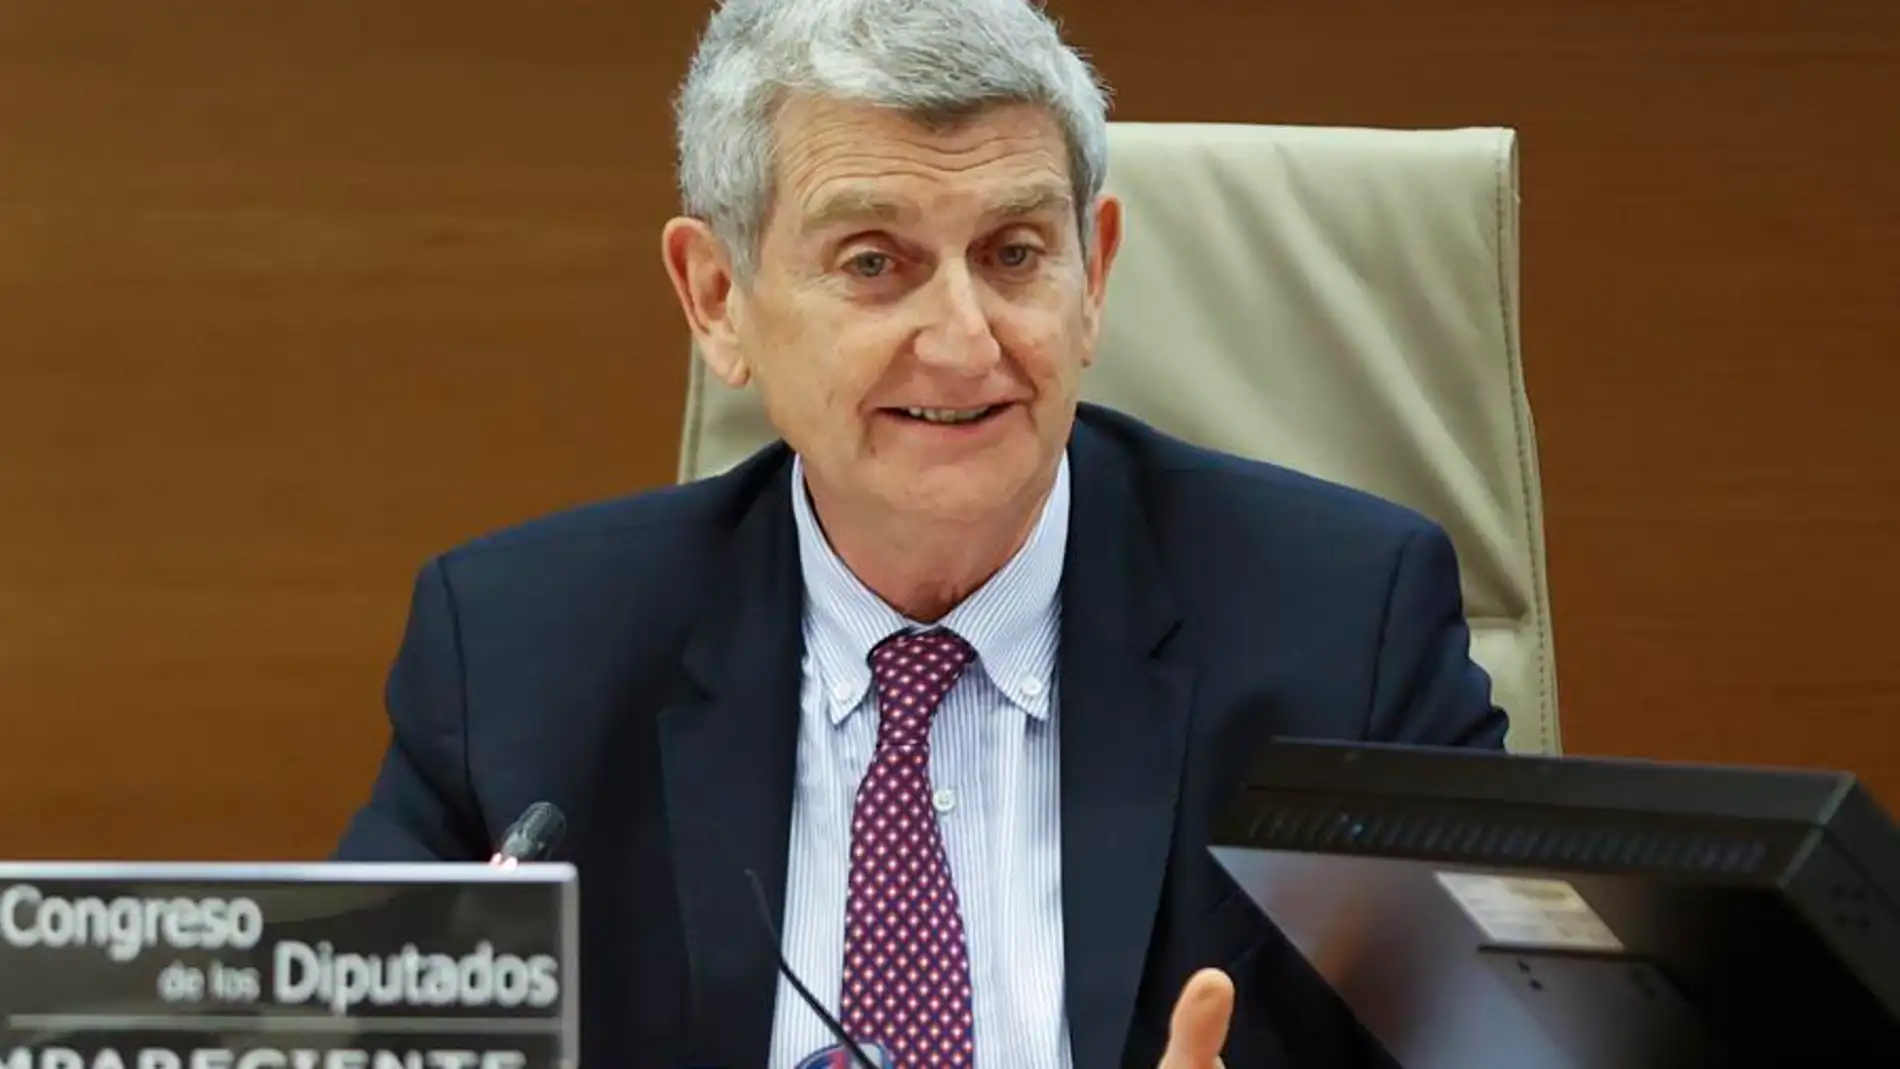 El presidente de RTVE, José Manuel Pérez Tornero, renuncia a su cargo